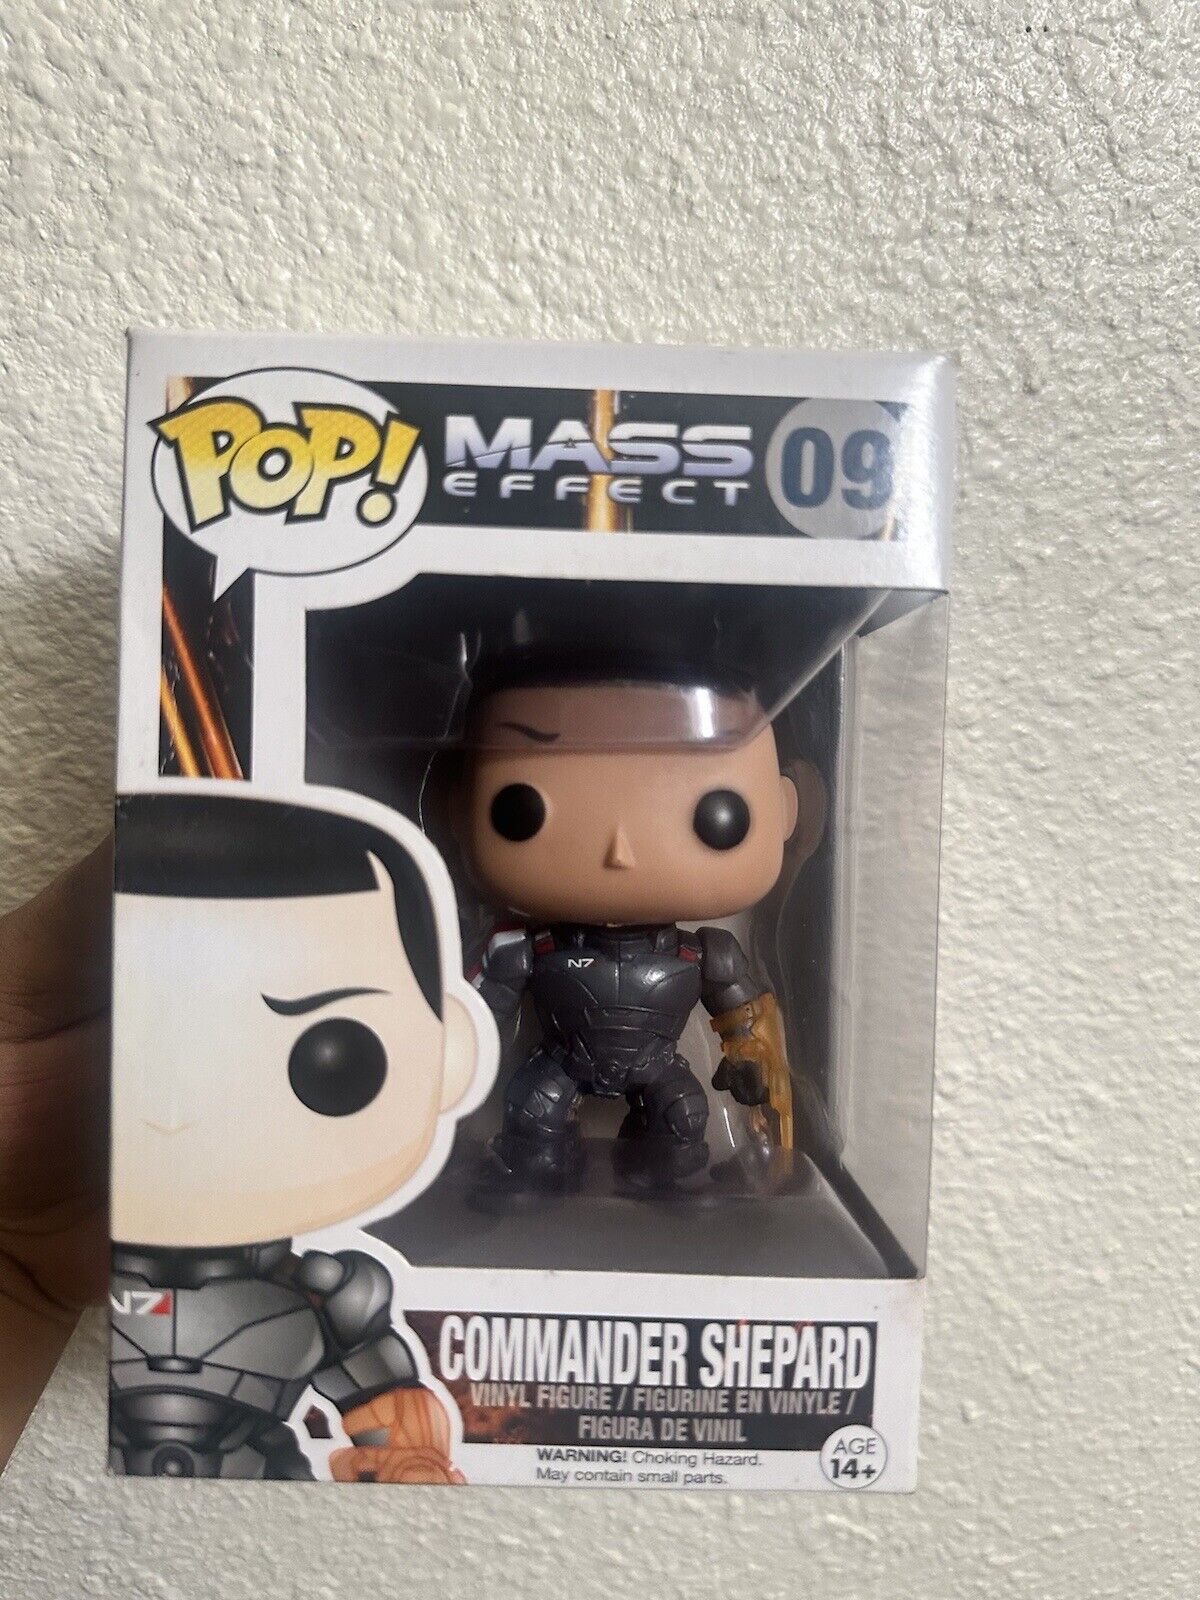 Funko Pop Mass Effect 09 Commander Shepard